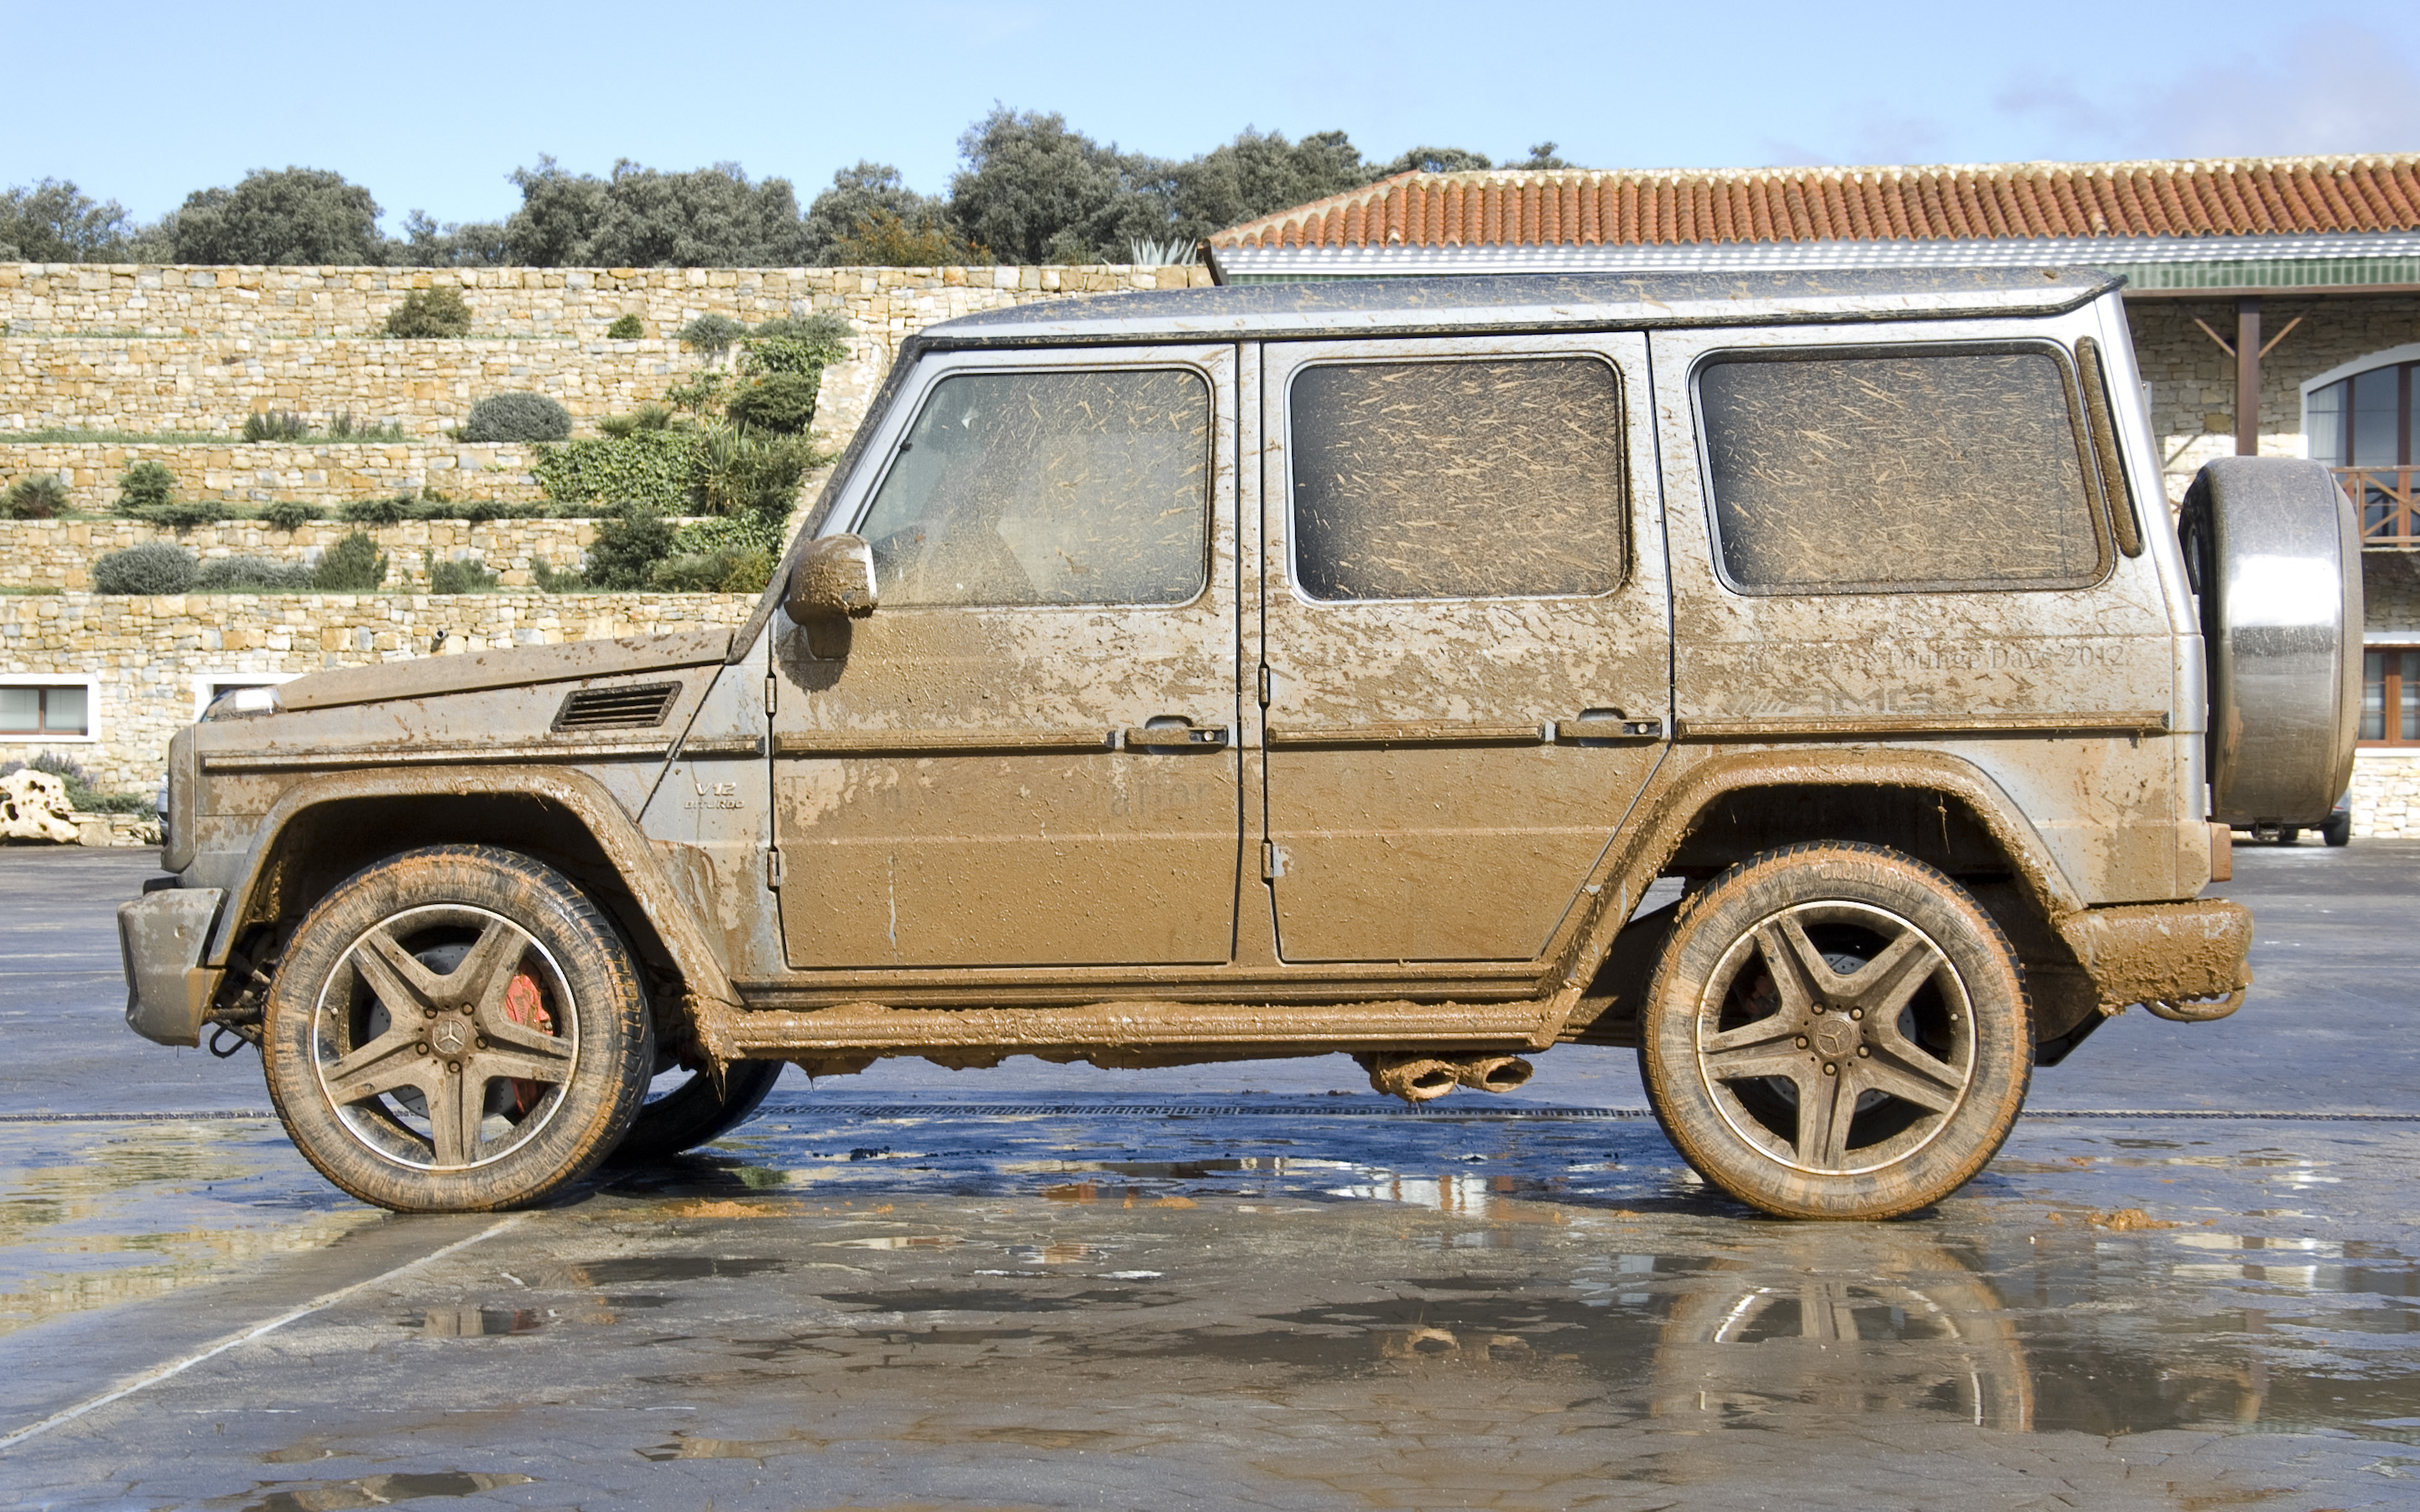 Mercedes-Benz G 65 AMG V12 biturbo - Covered in mud (8208408858)